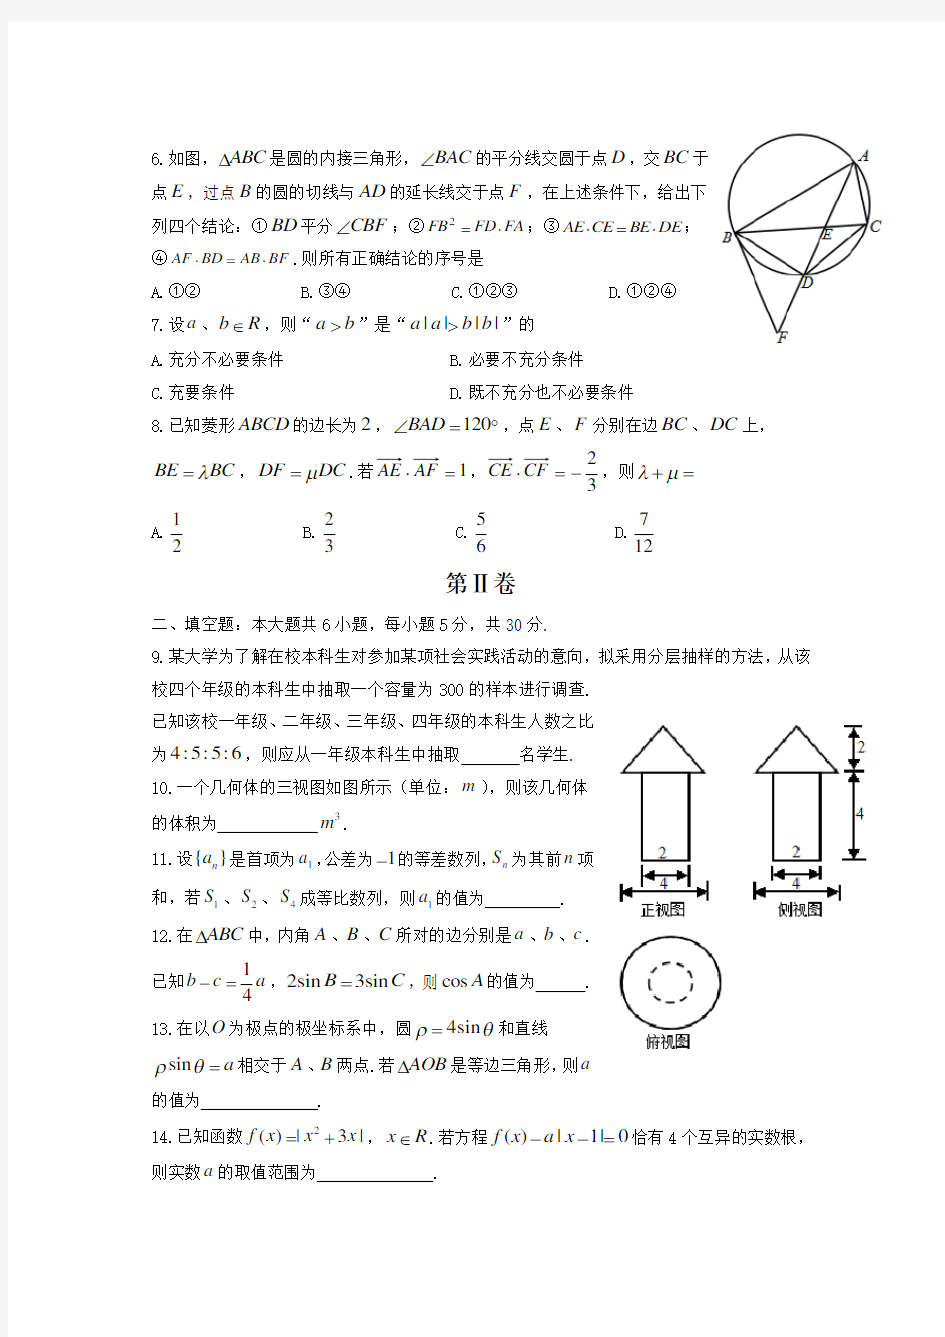 2014年高考理科数学试题(天津卷)及参考答案